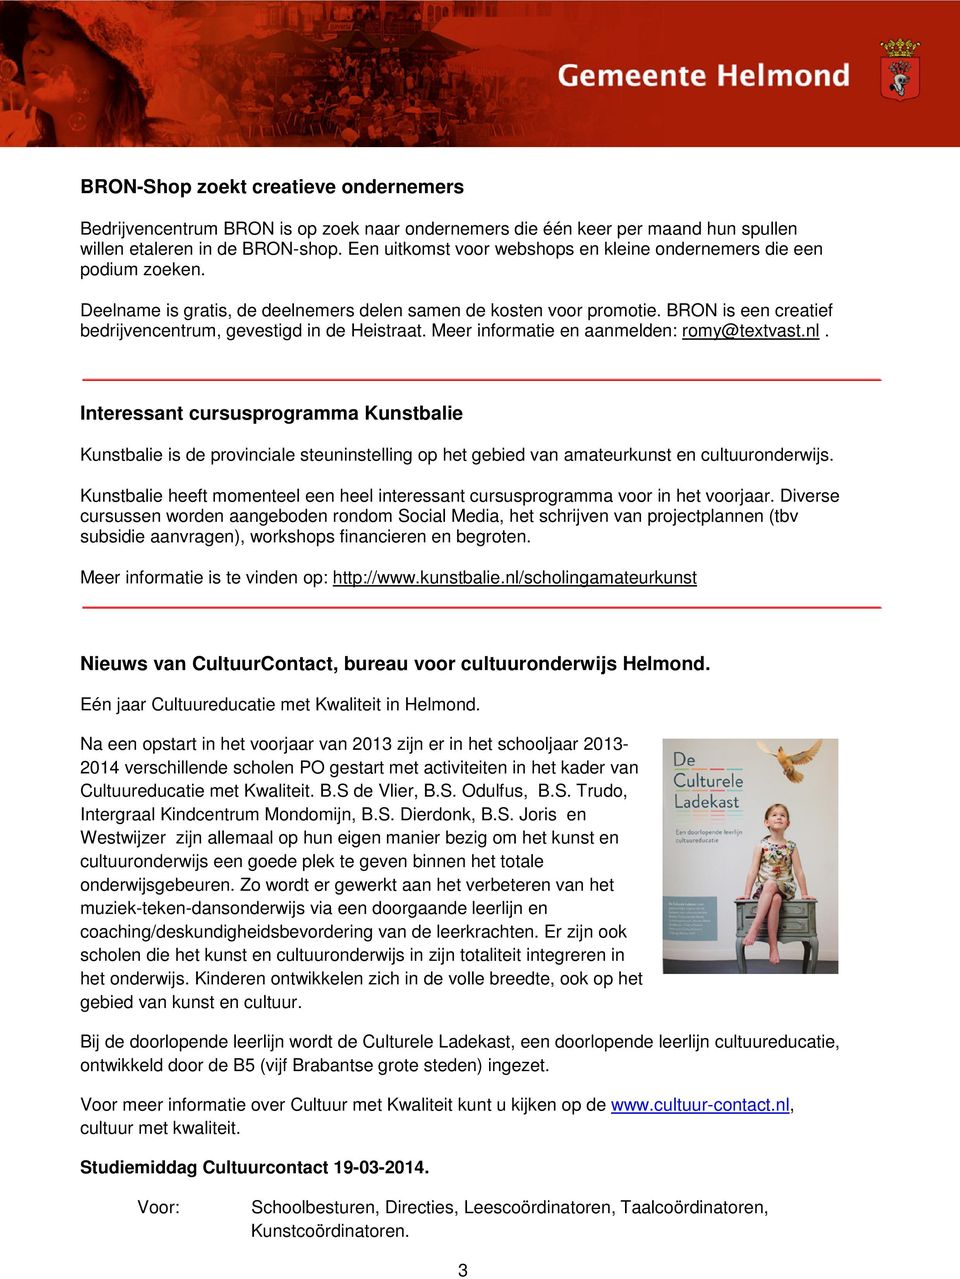 BRON is een creatief bedrijvencentrum, gevestigd in de Heistraat. Meer informatie en aanmelden: romy@textvast.nl.